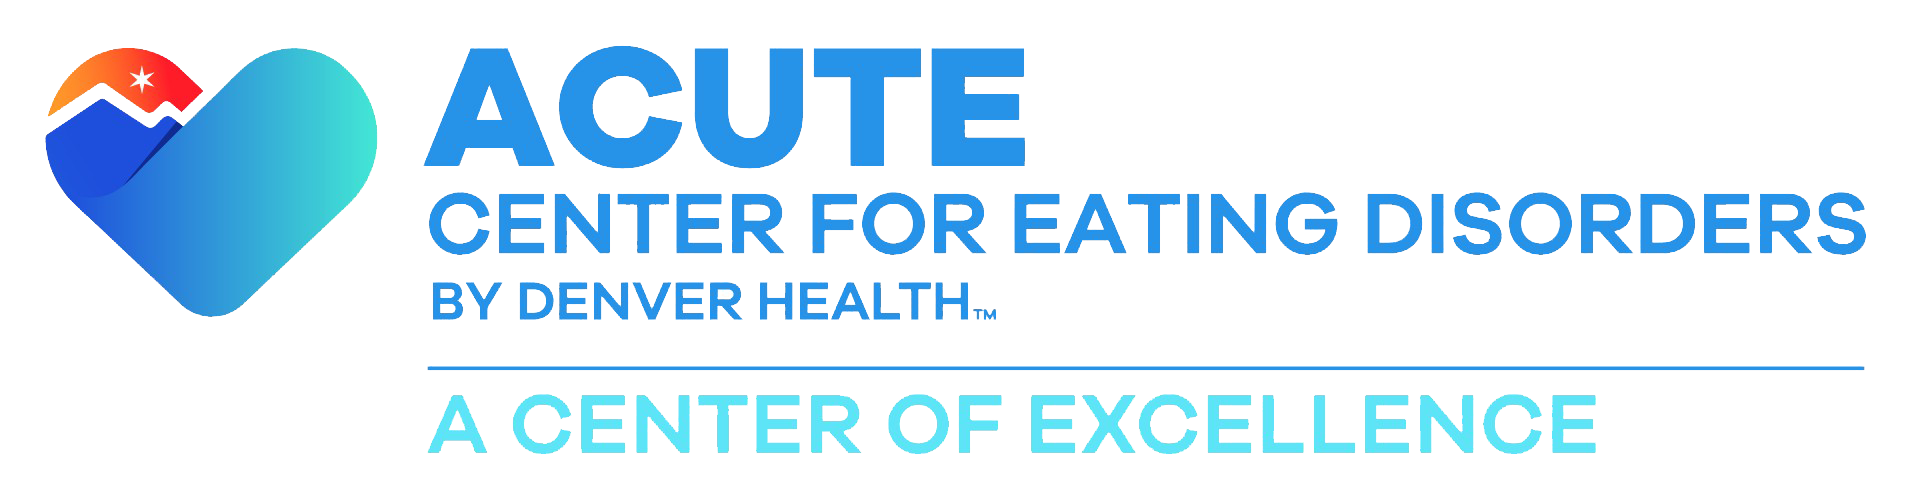 ACUTE Center for Eating Disorders & Severe Malnutrition at Denver Health